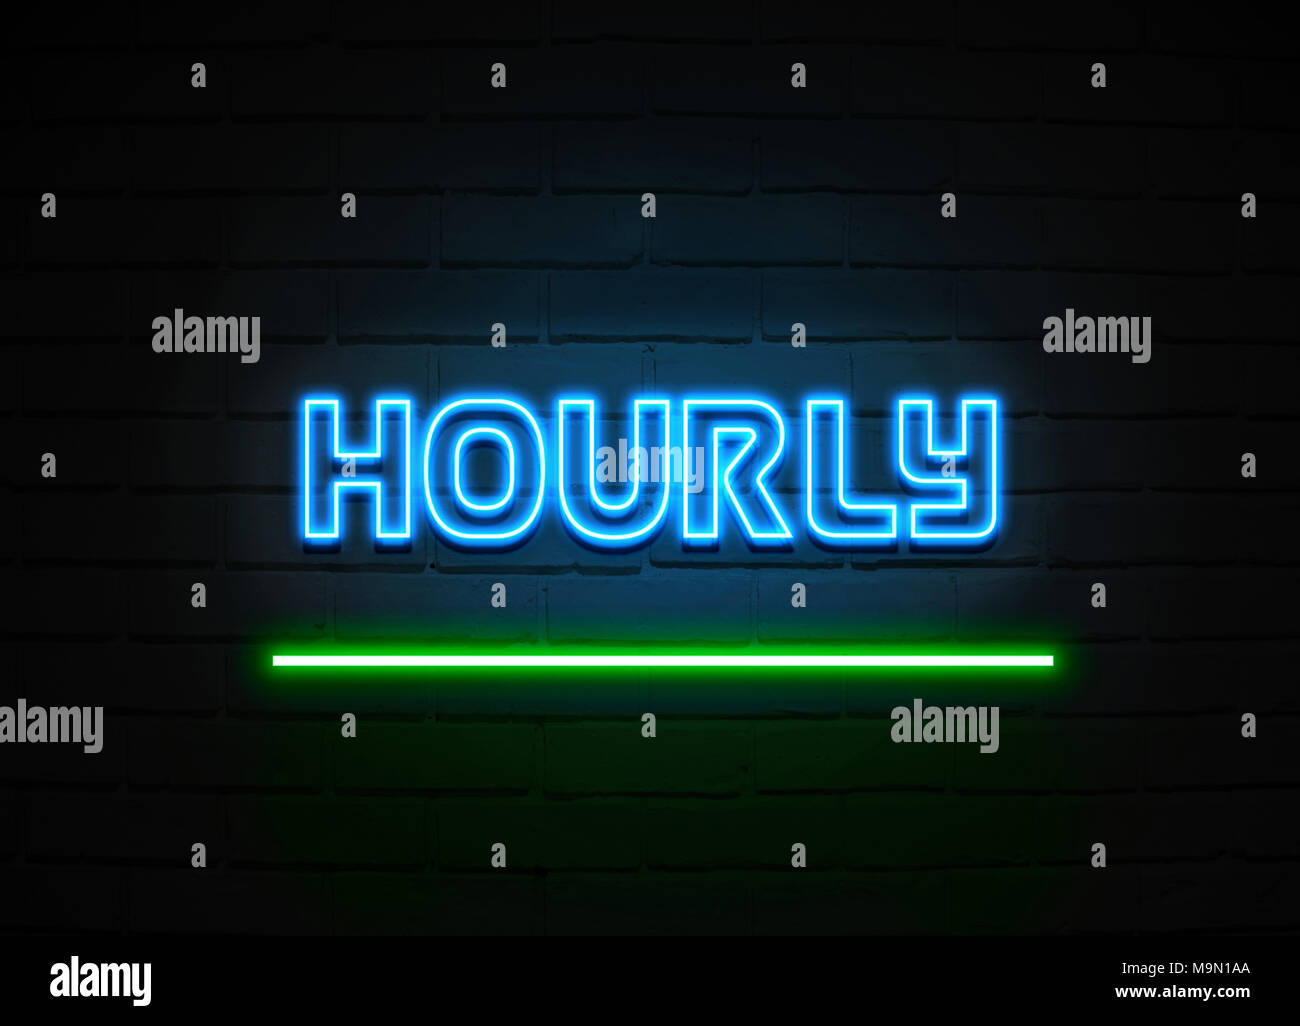 Enseigne au néon horaire - Glowing Neon Sign sur mur brickwall - rendu 3D illustration libres de droits. Banque D'Images